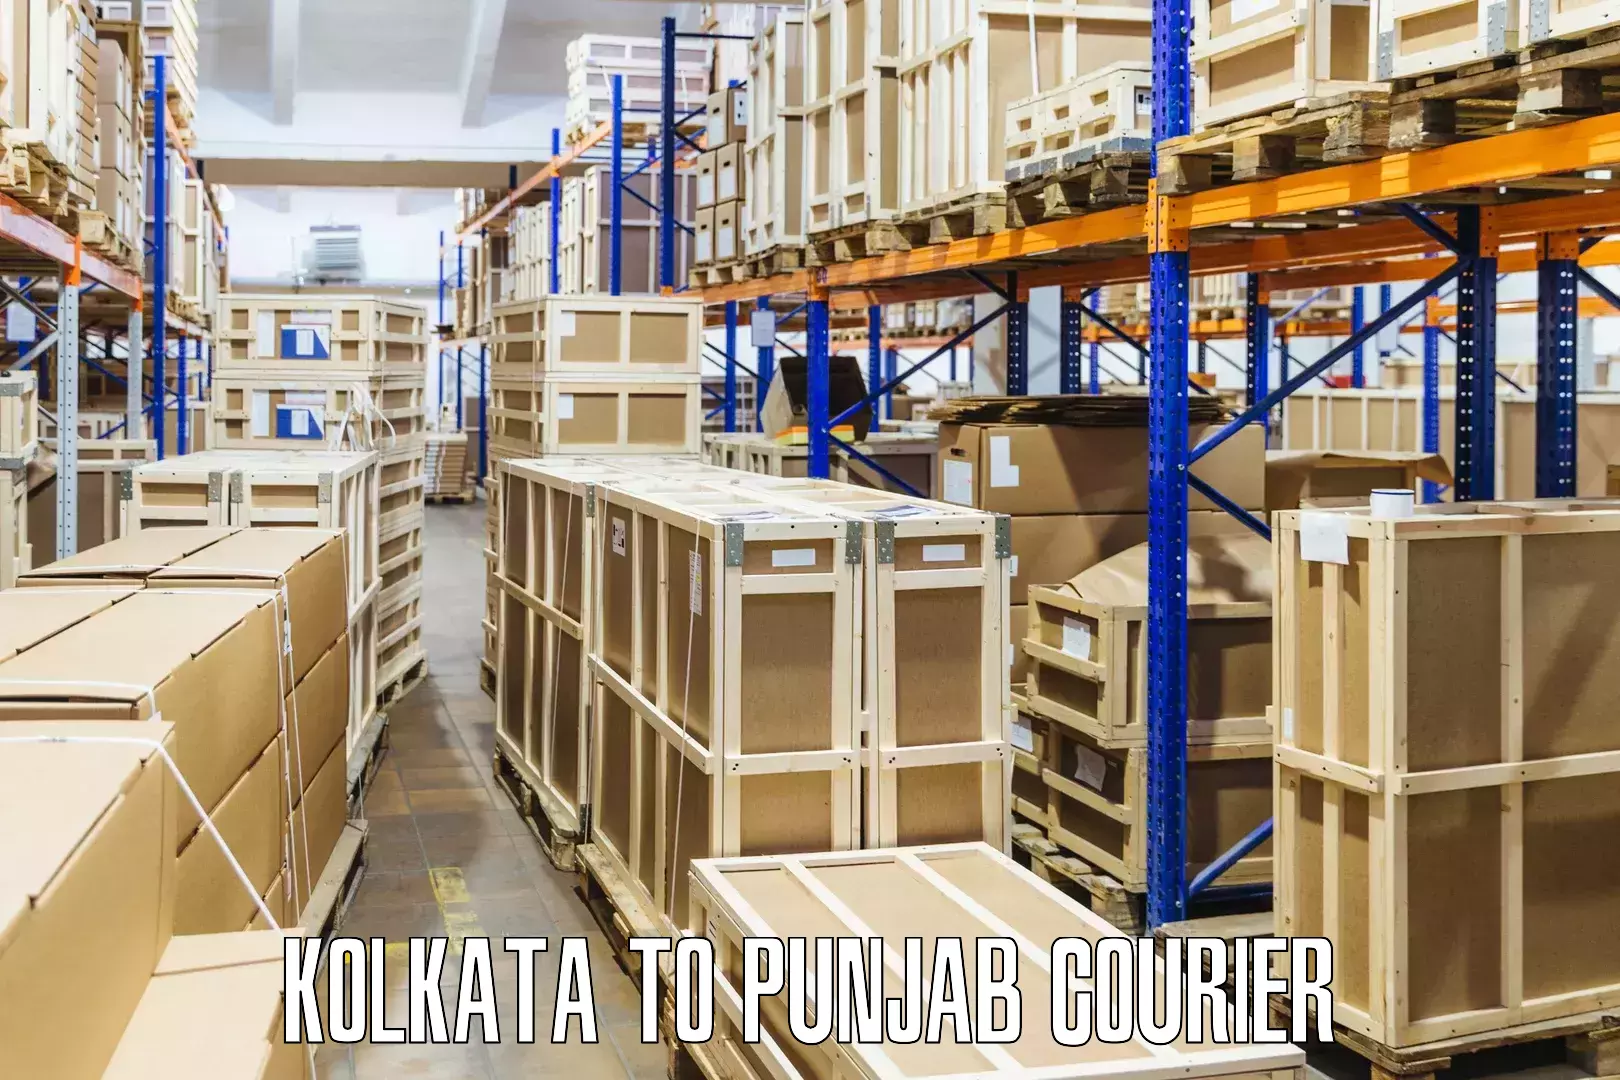 Quality courier services Kolkata to Dhuri